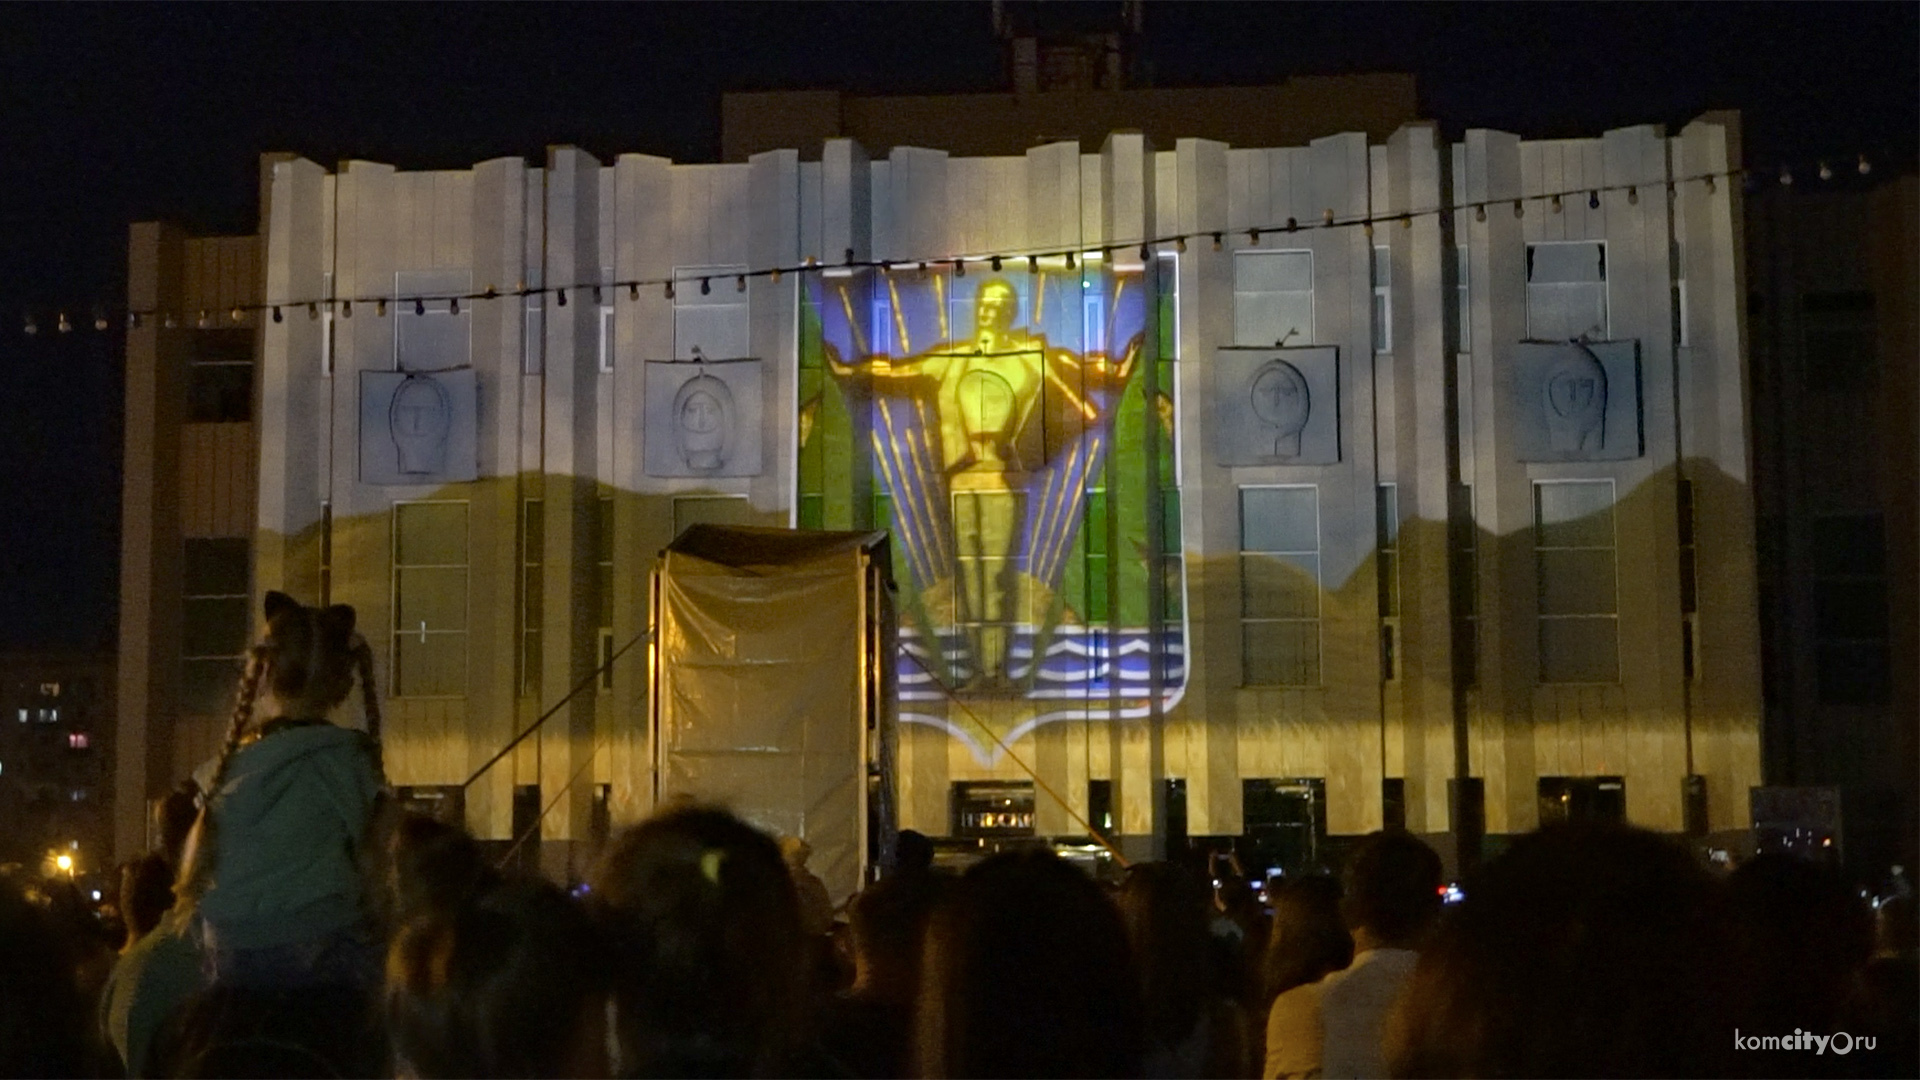 Световое представление о Комсомольске-на-Амуре показали на фасаде Драмтеатра — Видео от Komcity.ru